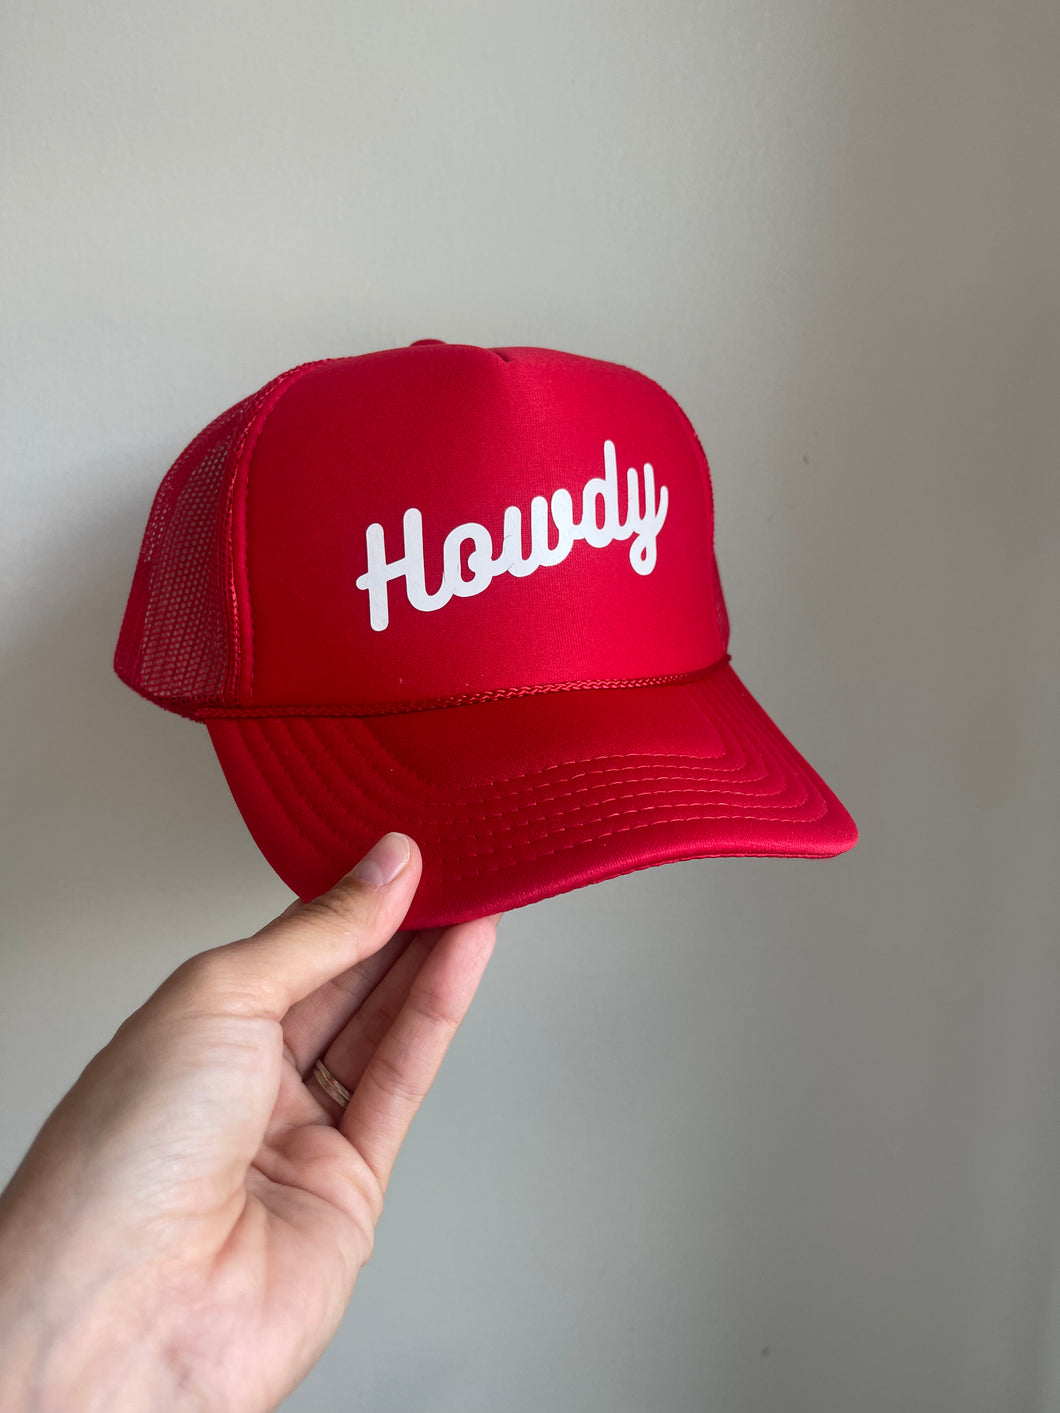 Howdy (script) Trucker Hat